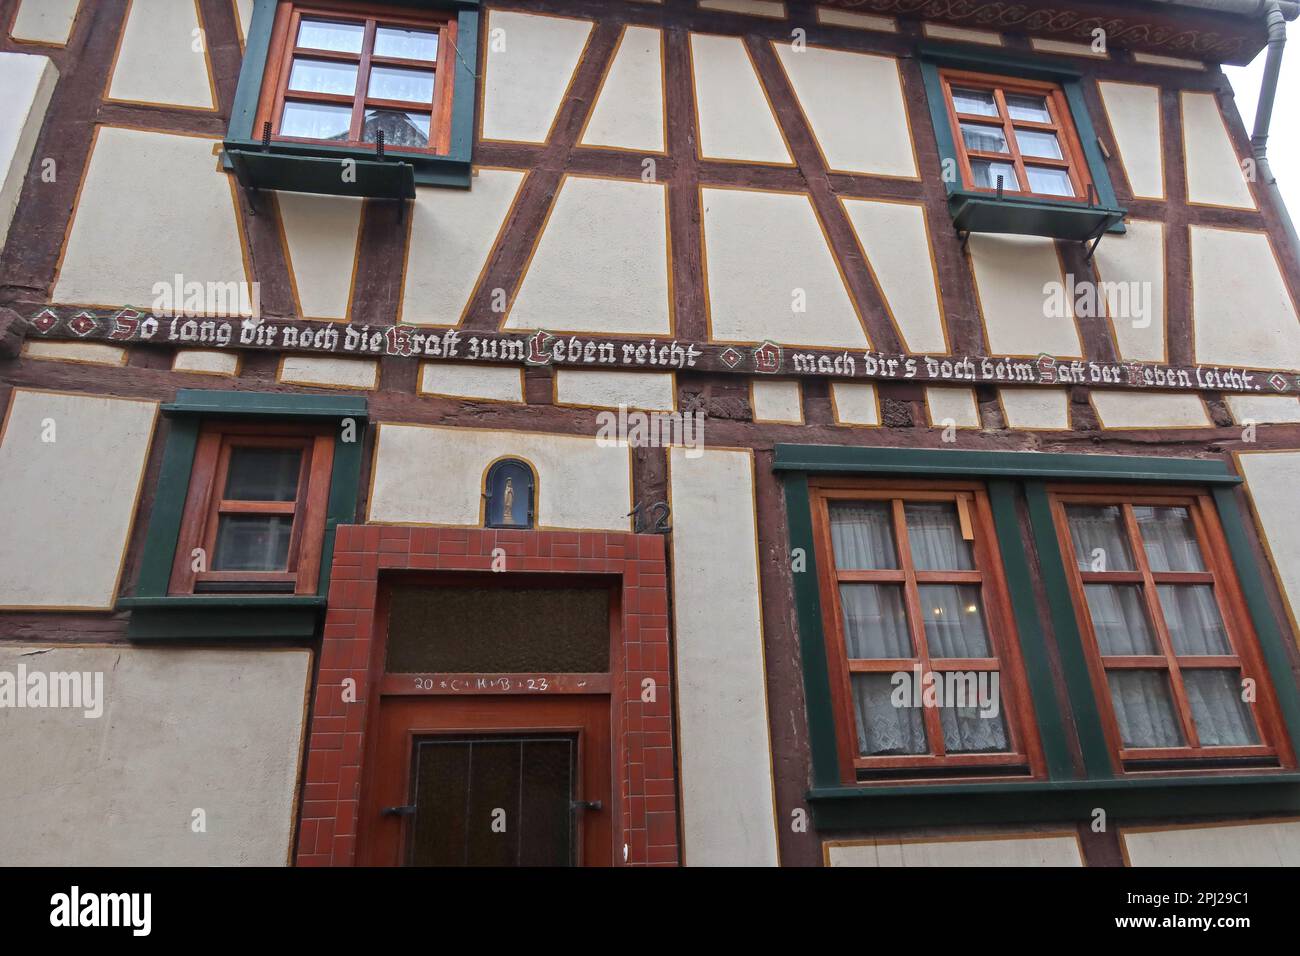 Maison traditionnelle à ossature de bois, Bacharach (Bacharach am Rhein), quartier de Mayence-Bingen, Allemagne Banque D'Images